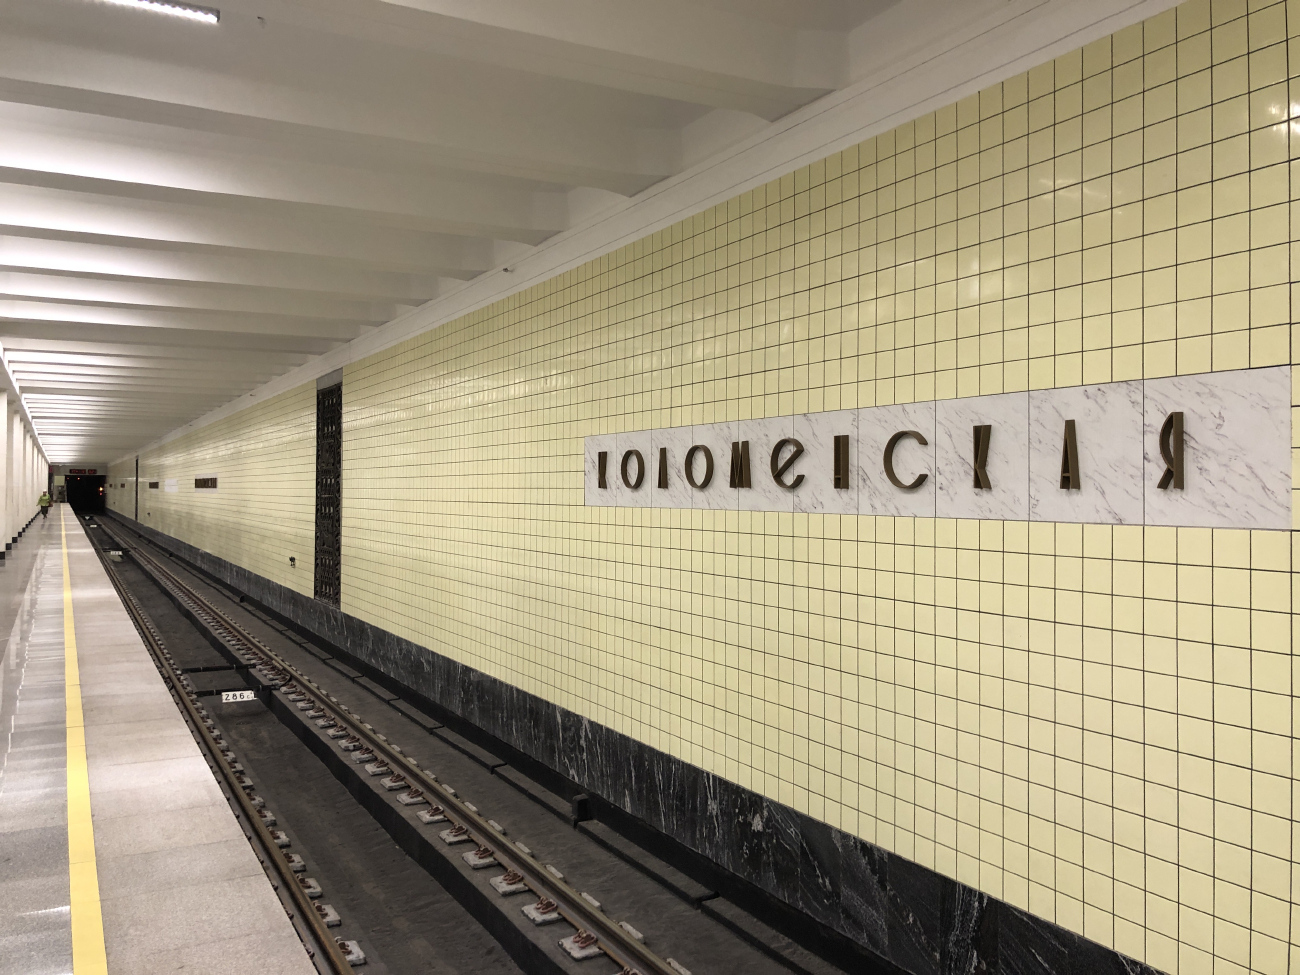 Moskva — Metro — [2] Zamoskvoretskaya Line